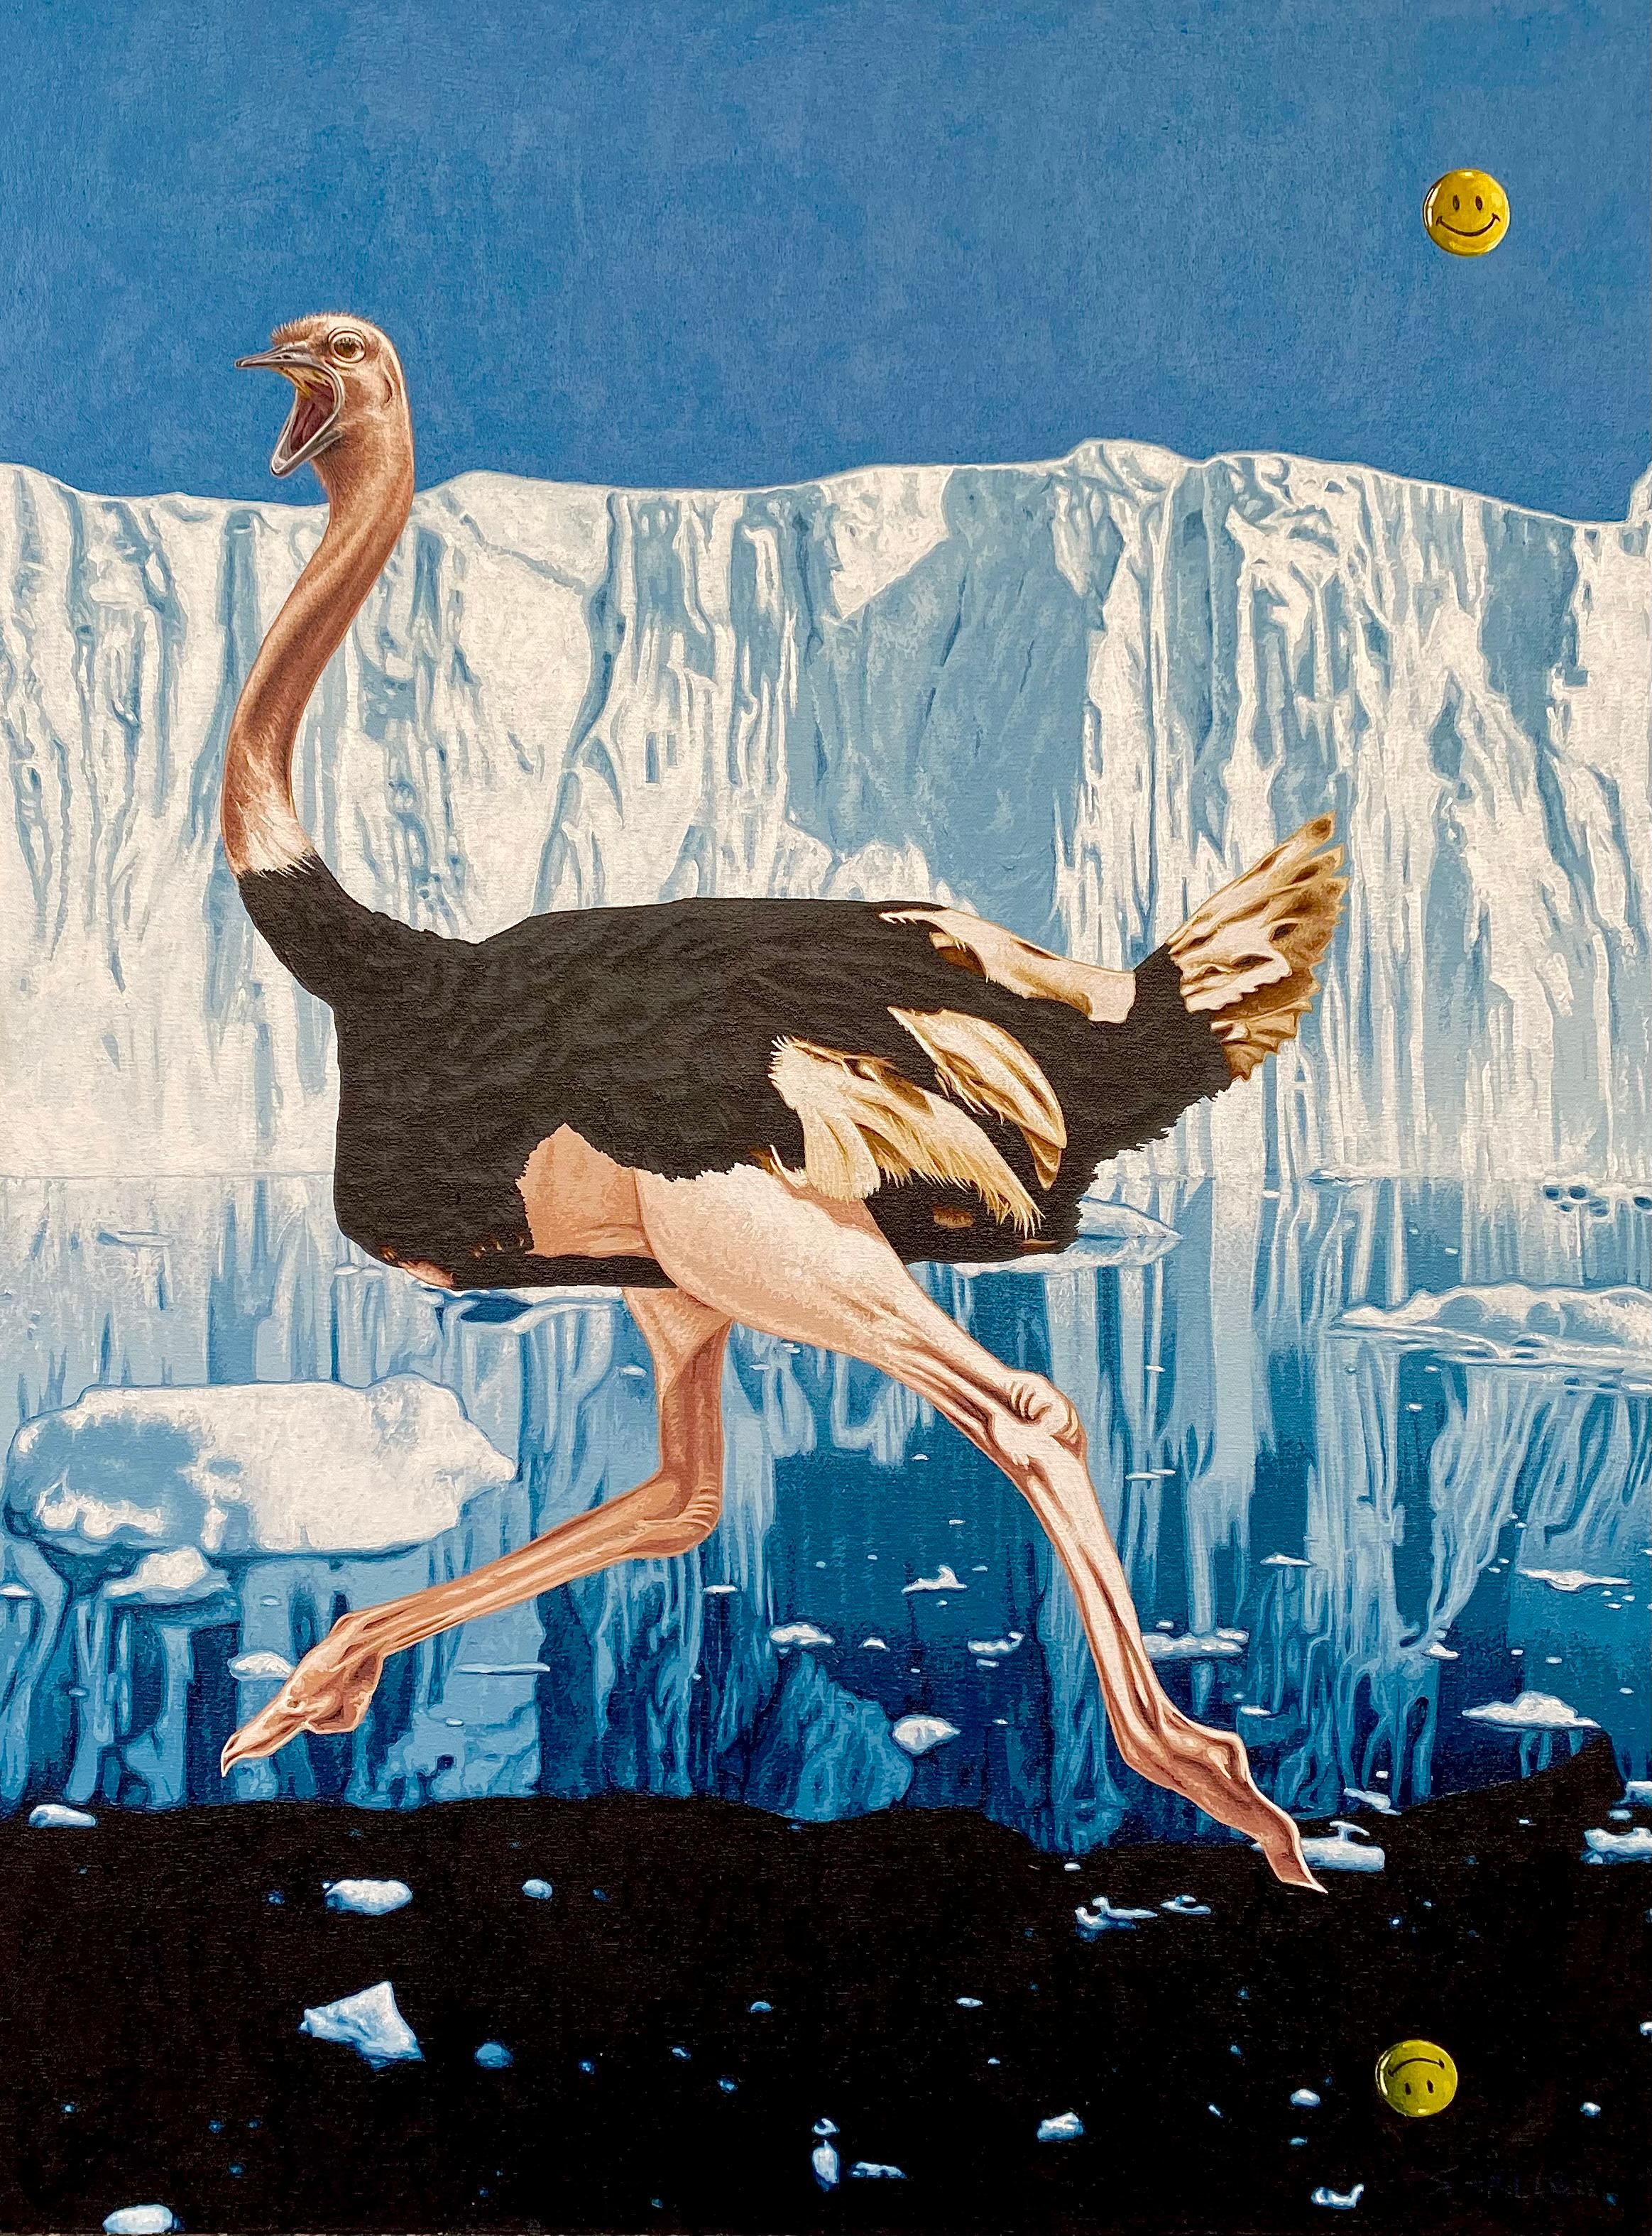 Figurative Painting Stephen Hall - Acrylique sur toile : Attends, il y a quelque chose qui cloche""